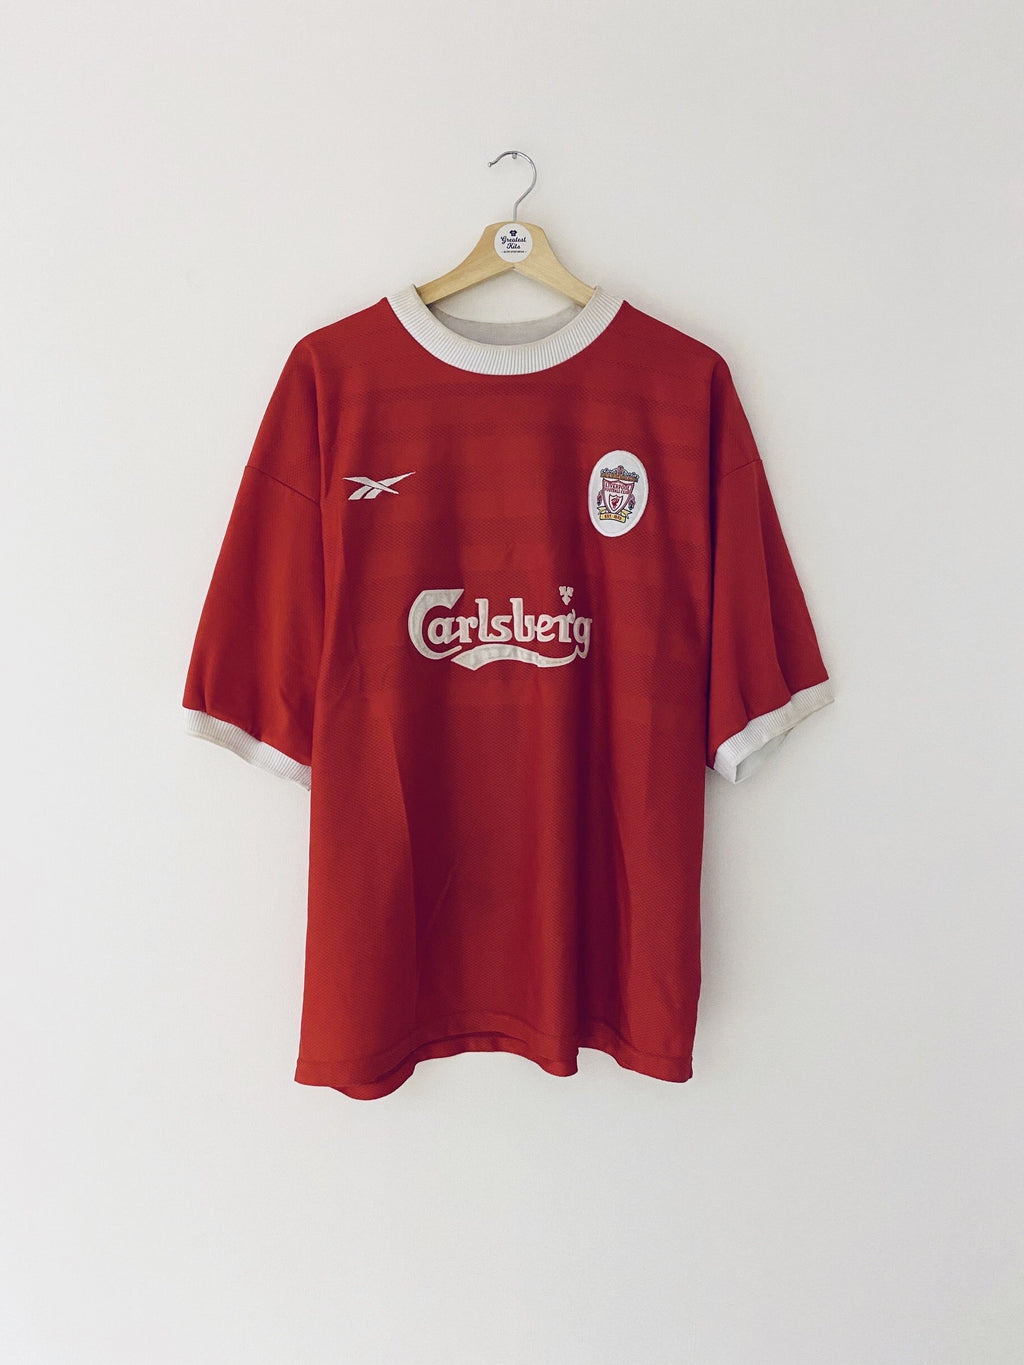 Camiseta local del Liverpool 1998/00 (XL) 7,5/10